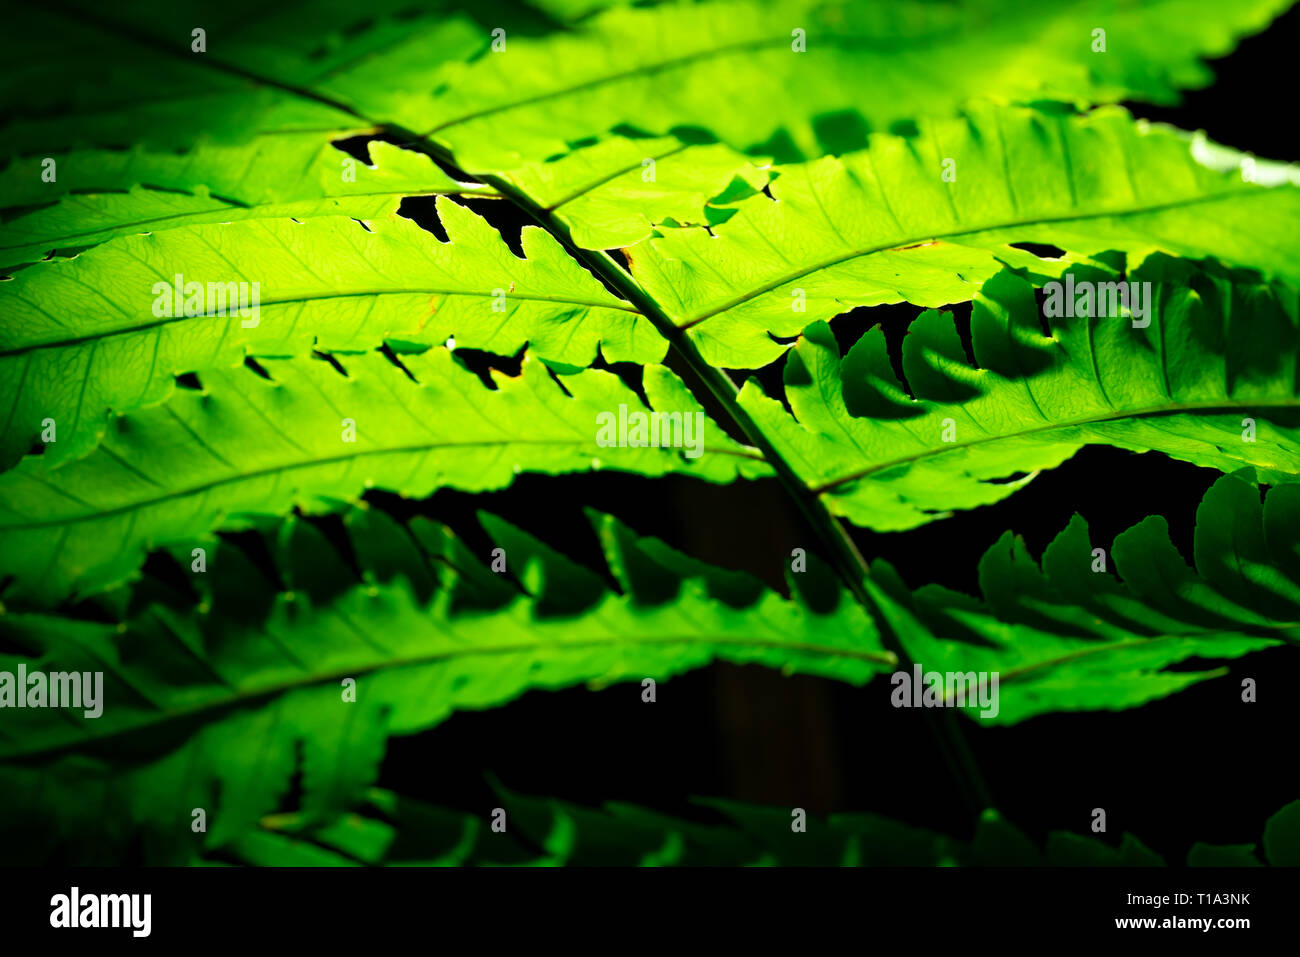 Grünes Blatt mit Sonnenlicht auf dunklem Hintergrund. Natur Hintergrund. Makroaufnahme der Farn Blatt Textur. Farn Blätter im Wald. Sonne scheint durch Farn lea Stockfoto